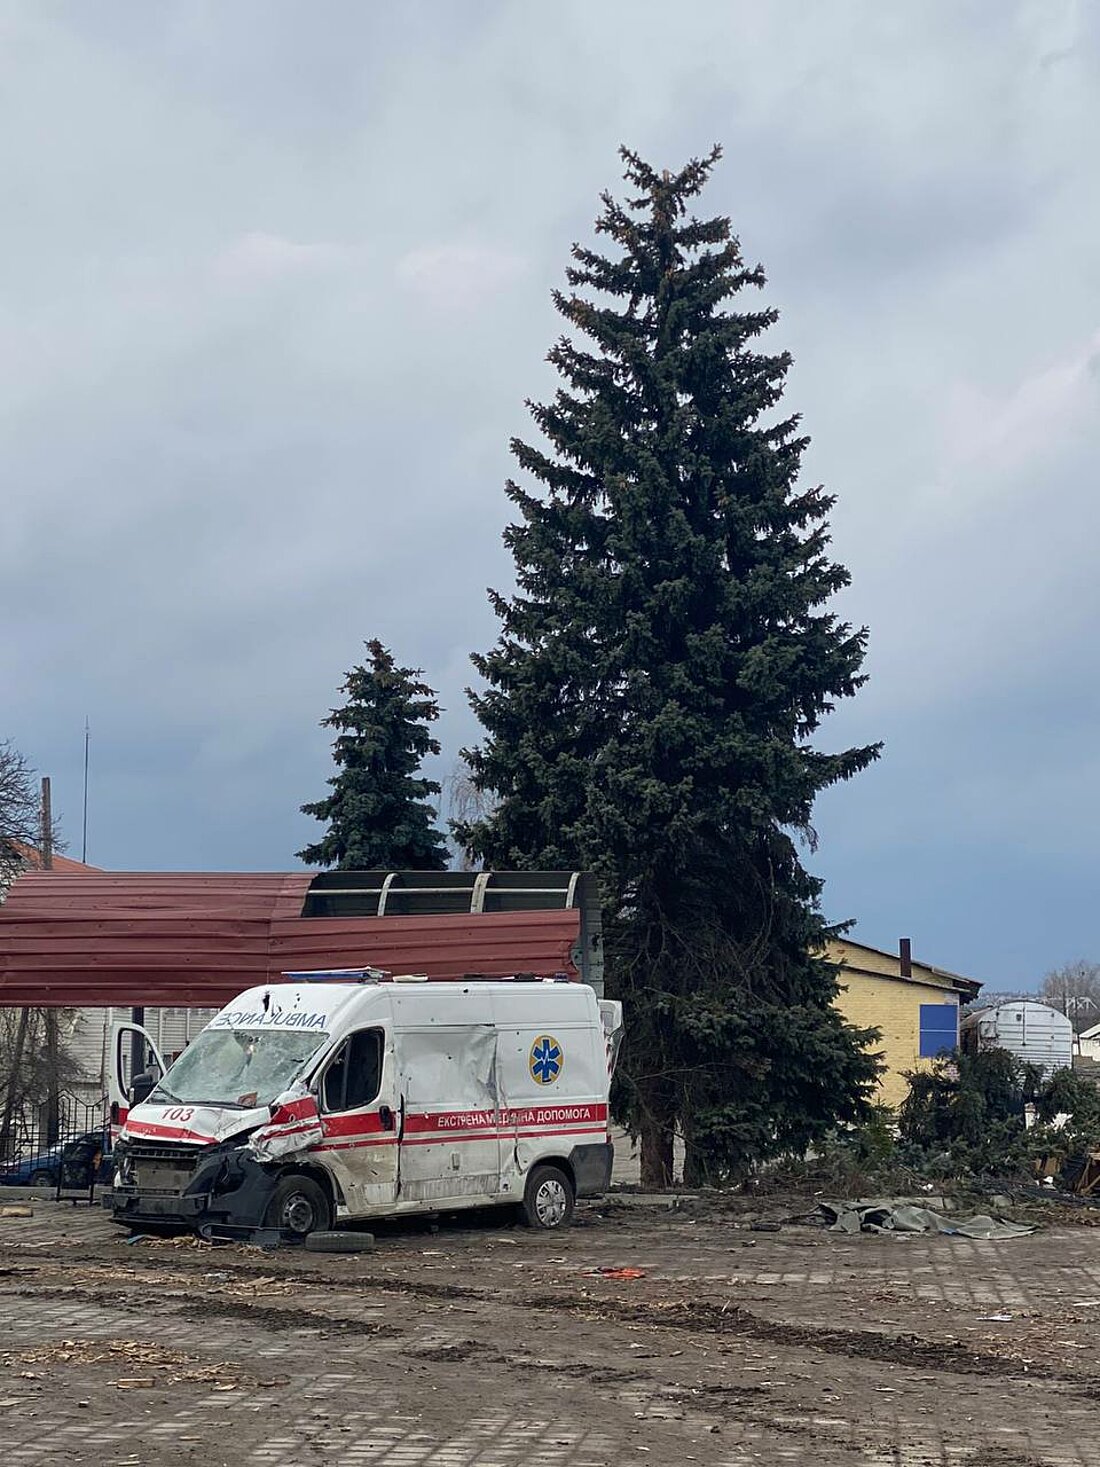 Man sieht einen demolierten ukrainischen Krankenwagen, der am Rand eines Platzes steht.